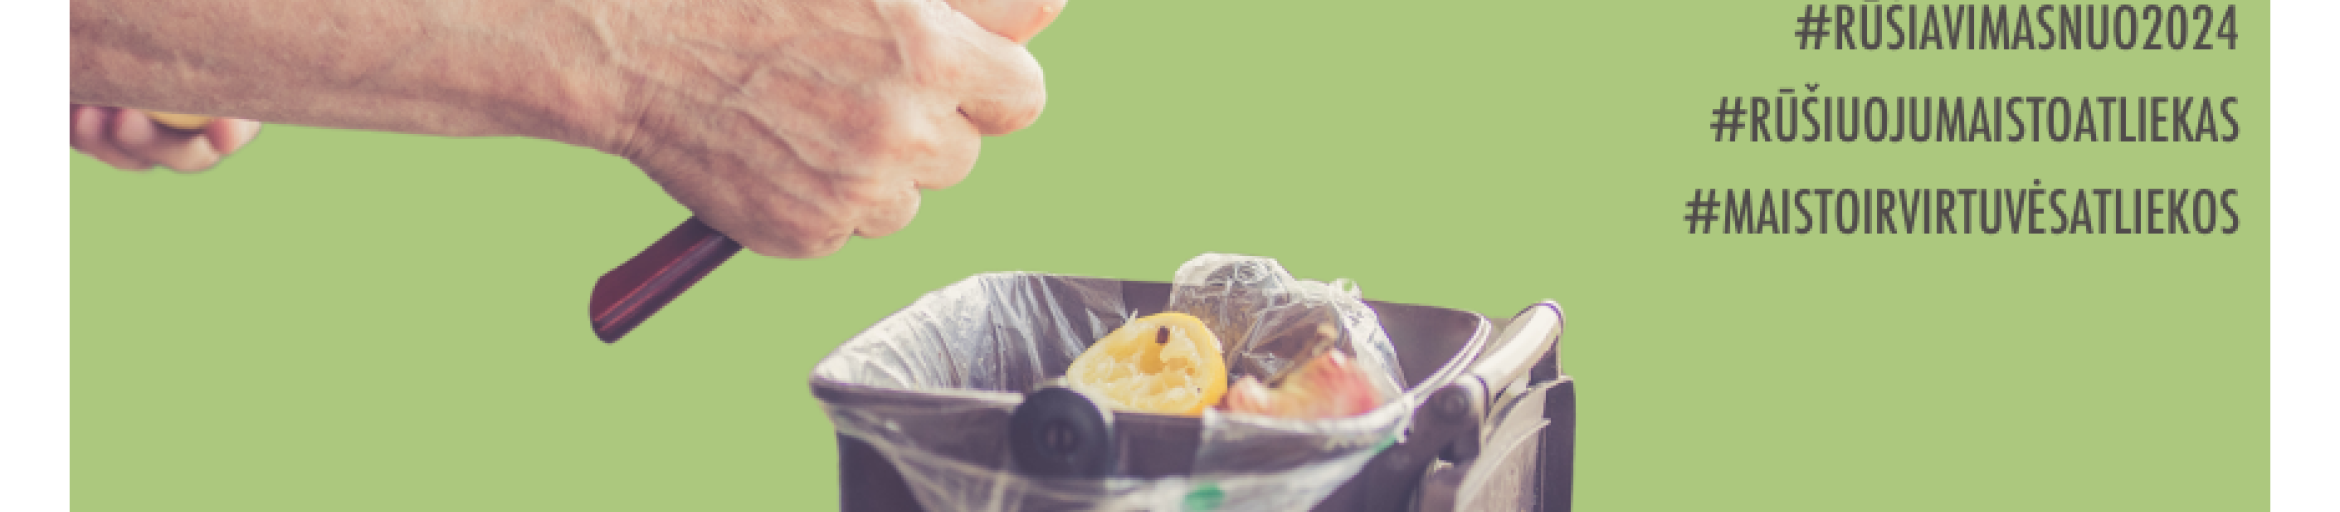 Maisto ir virtuvės atliekų rūšiavimo atmintinė: kaip rūšiuoti?